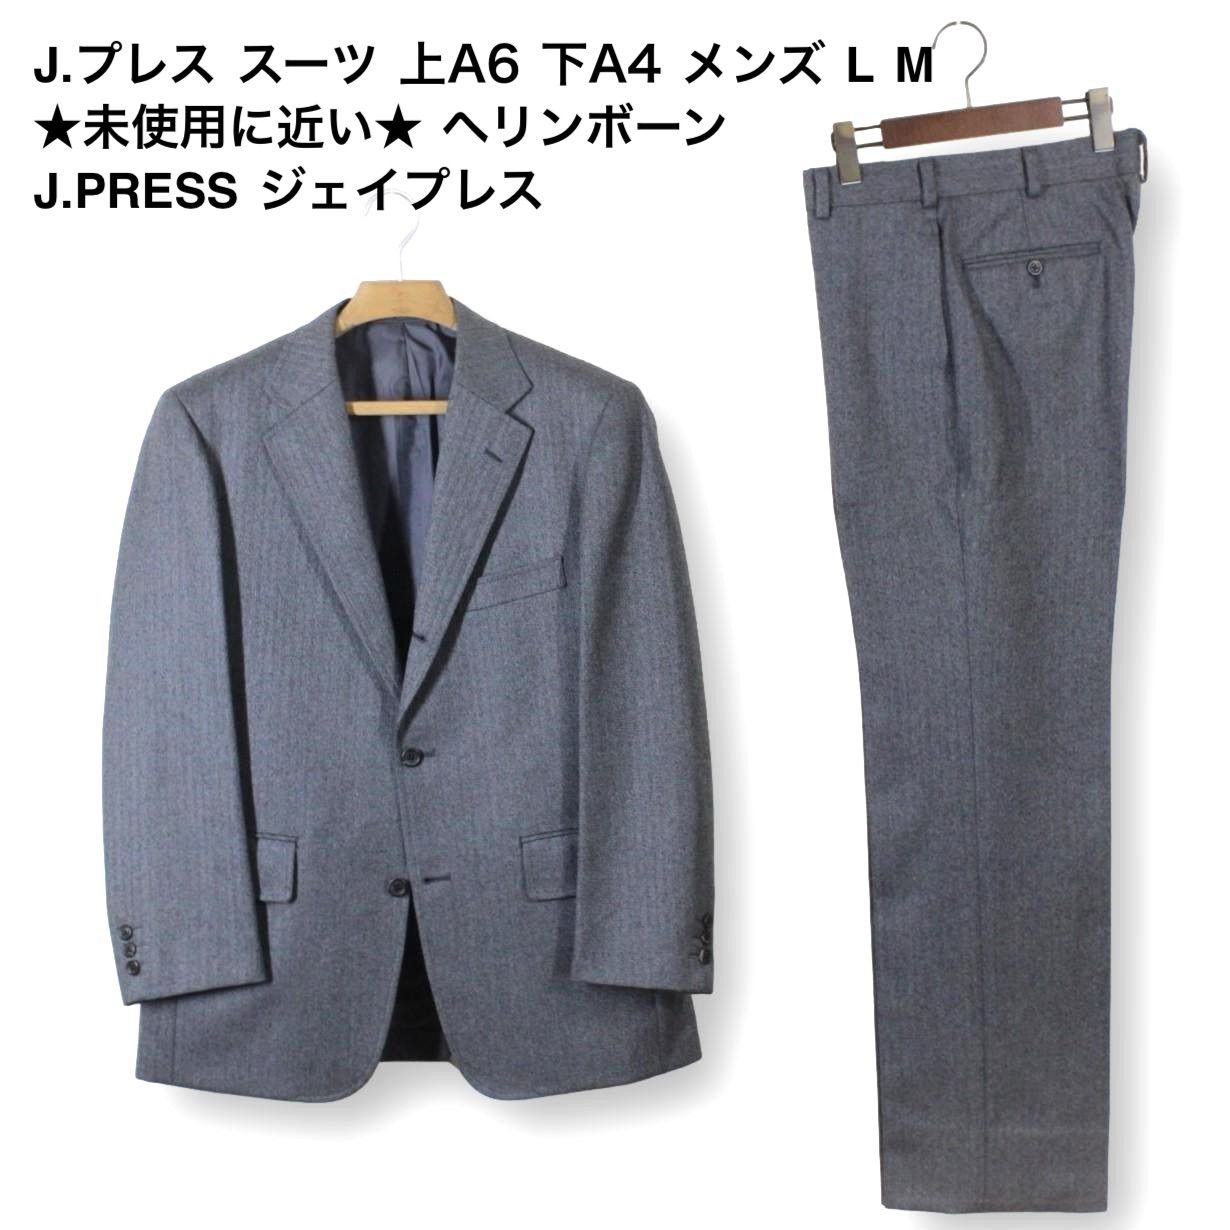 メンズ スーツ ダブル J.PRESS ジェイプレス 92-78-170 美品 